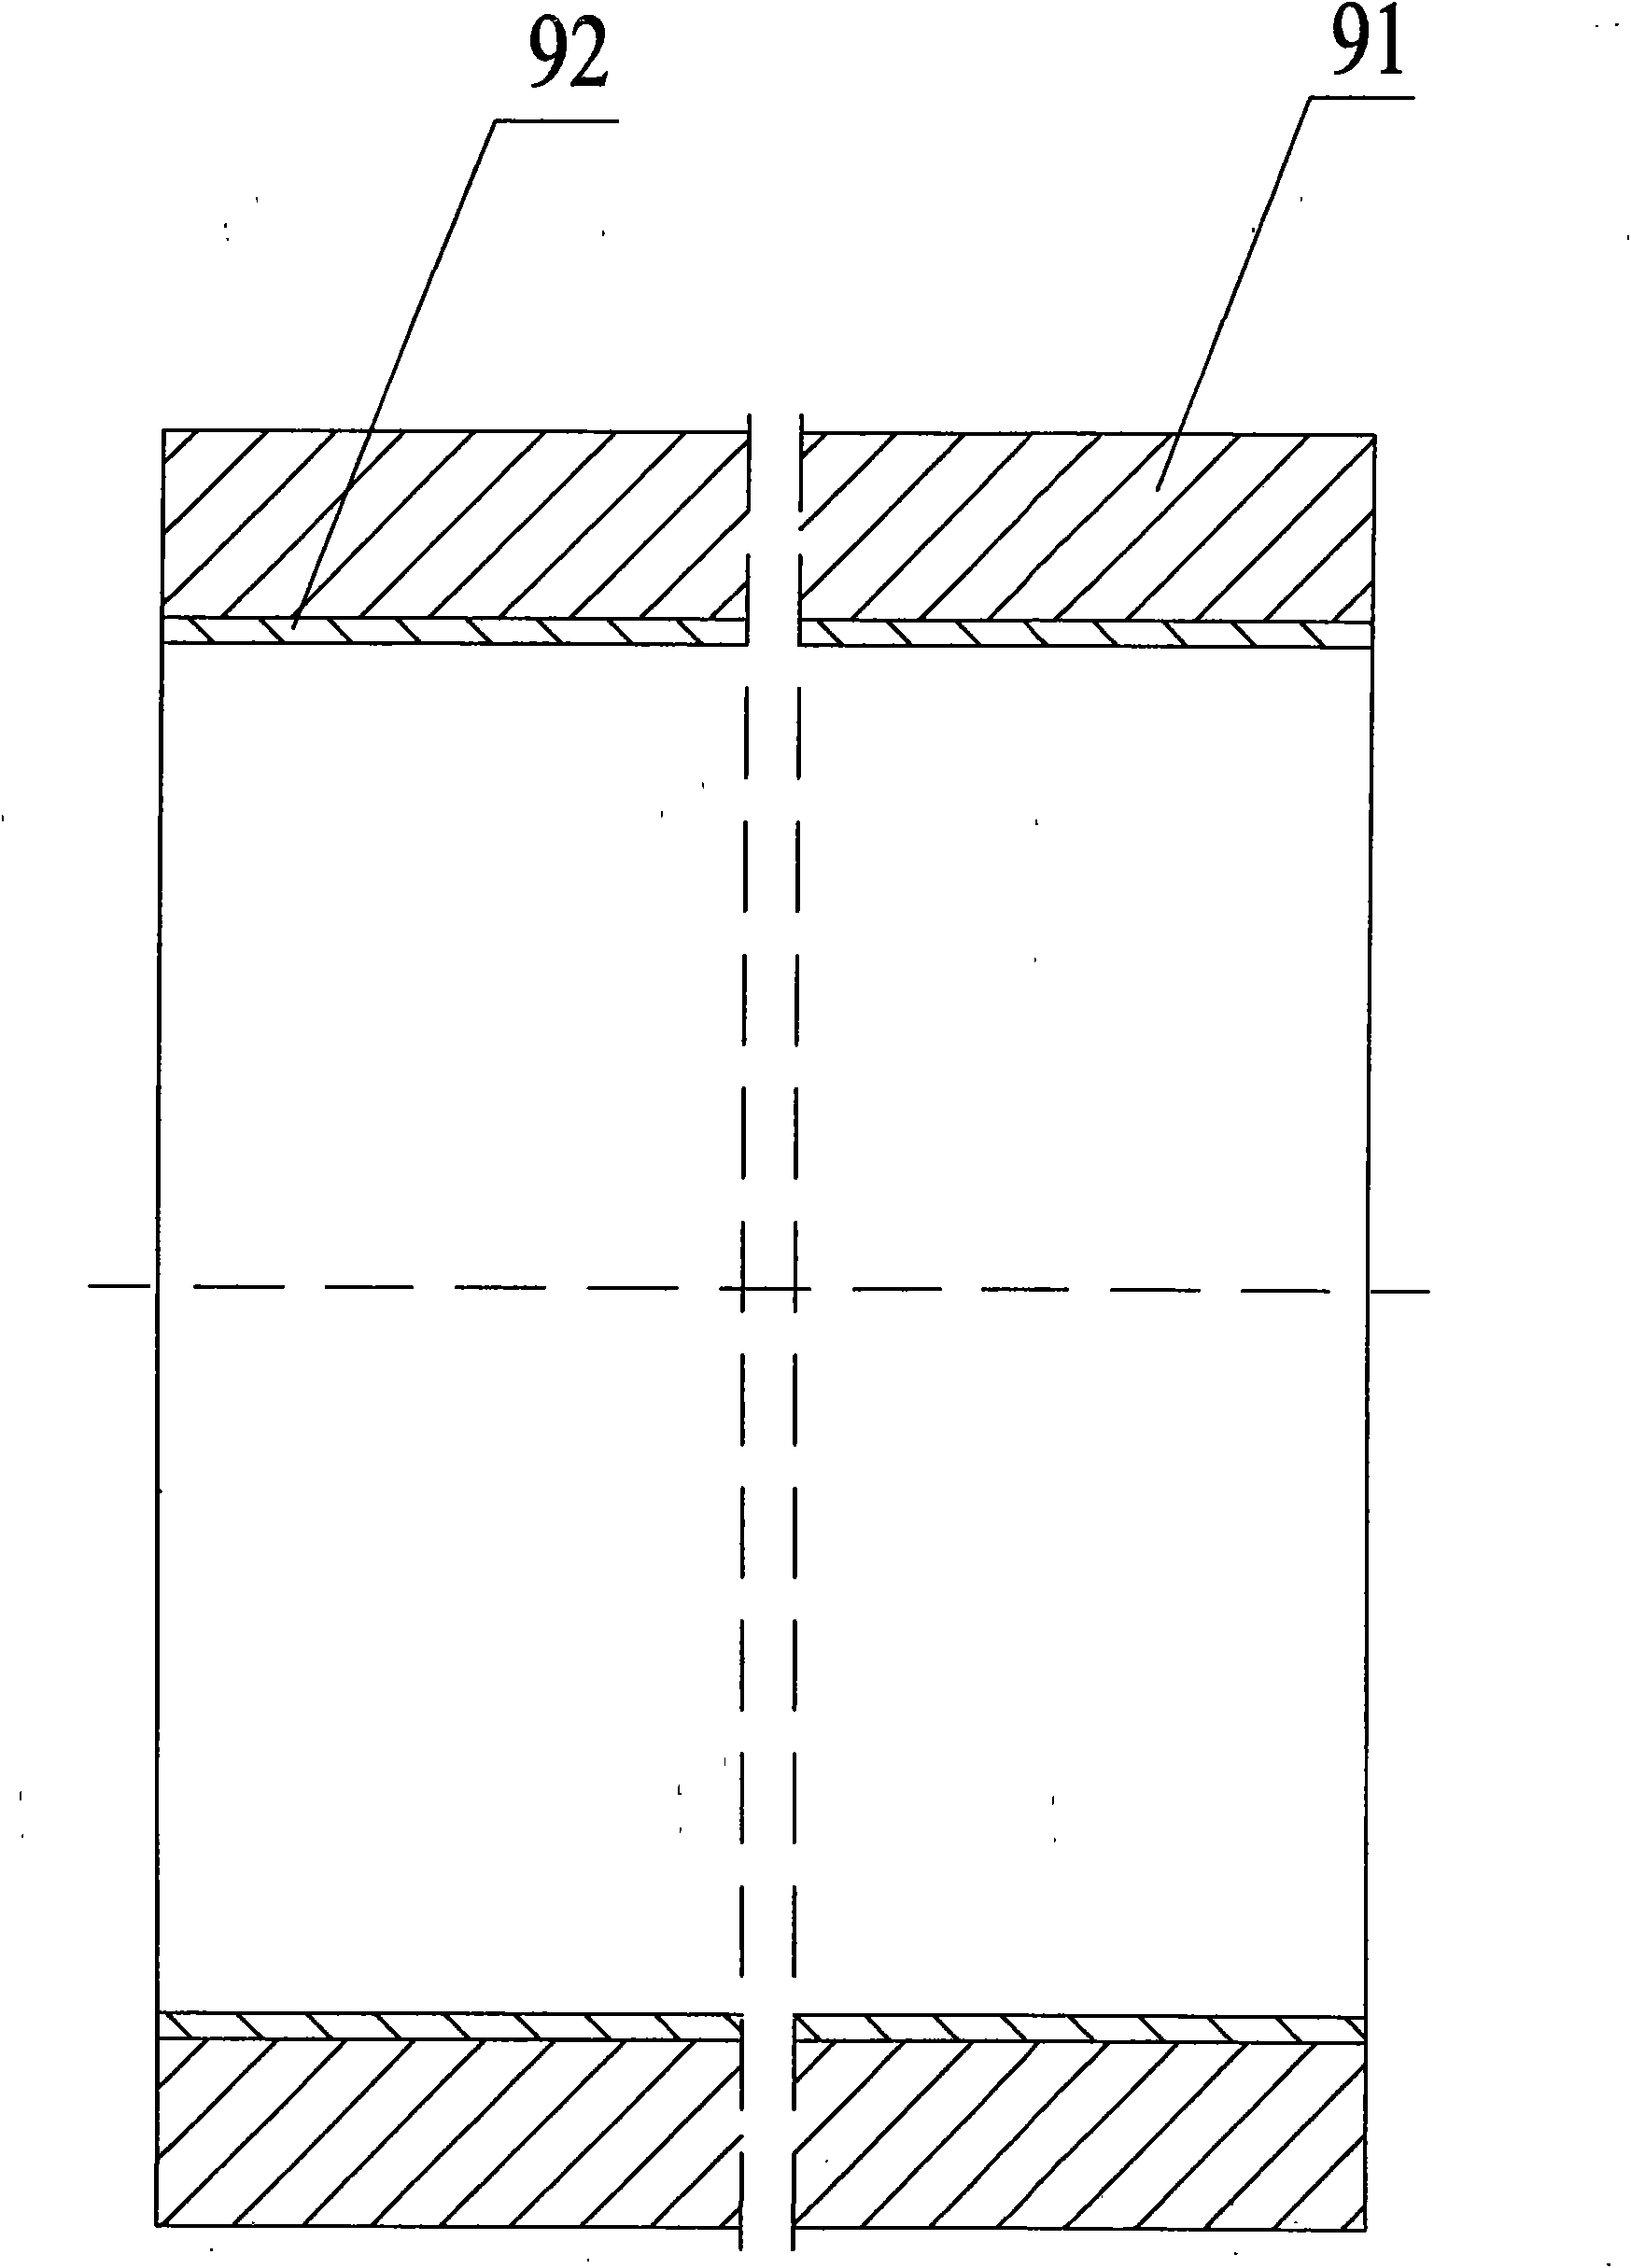 Dual-tubesheet heat interchanger